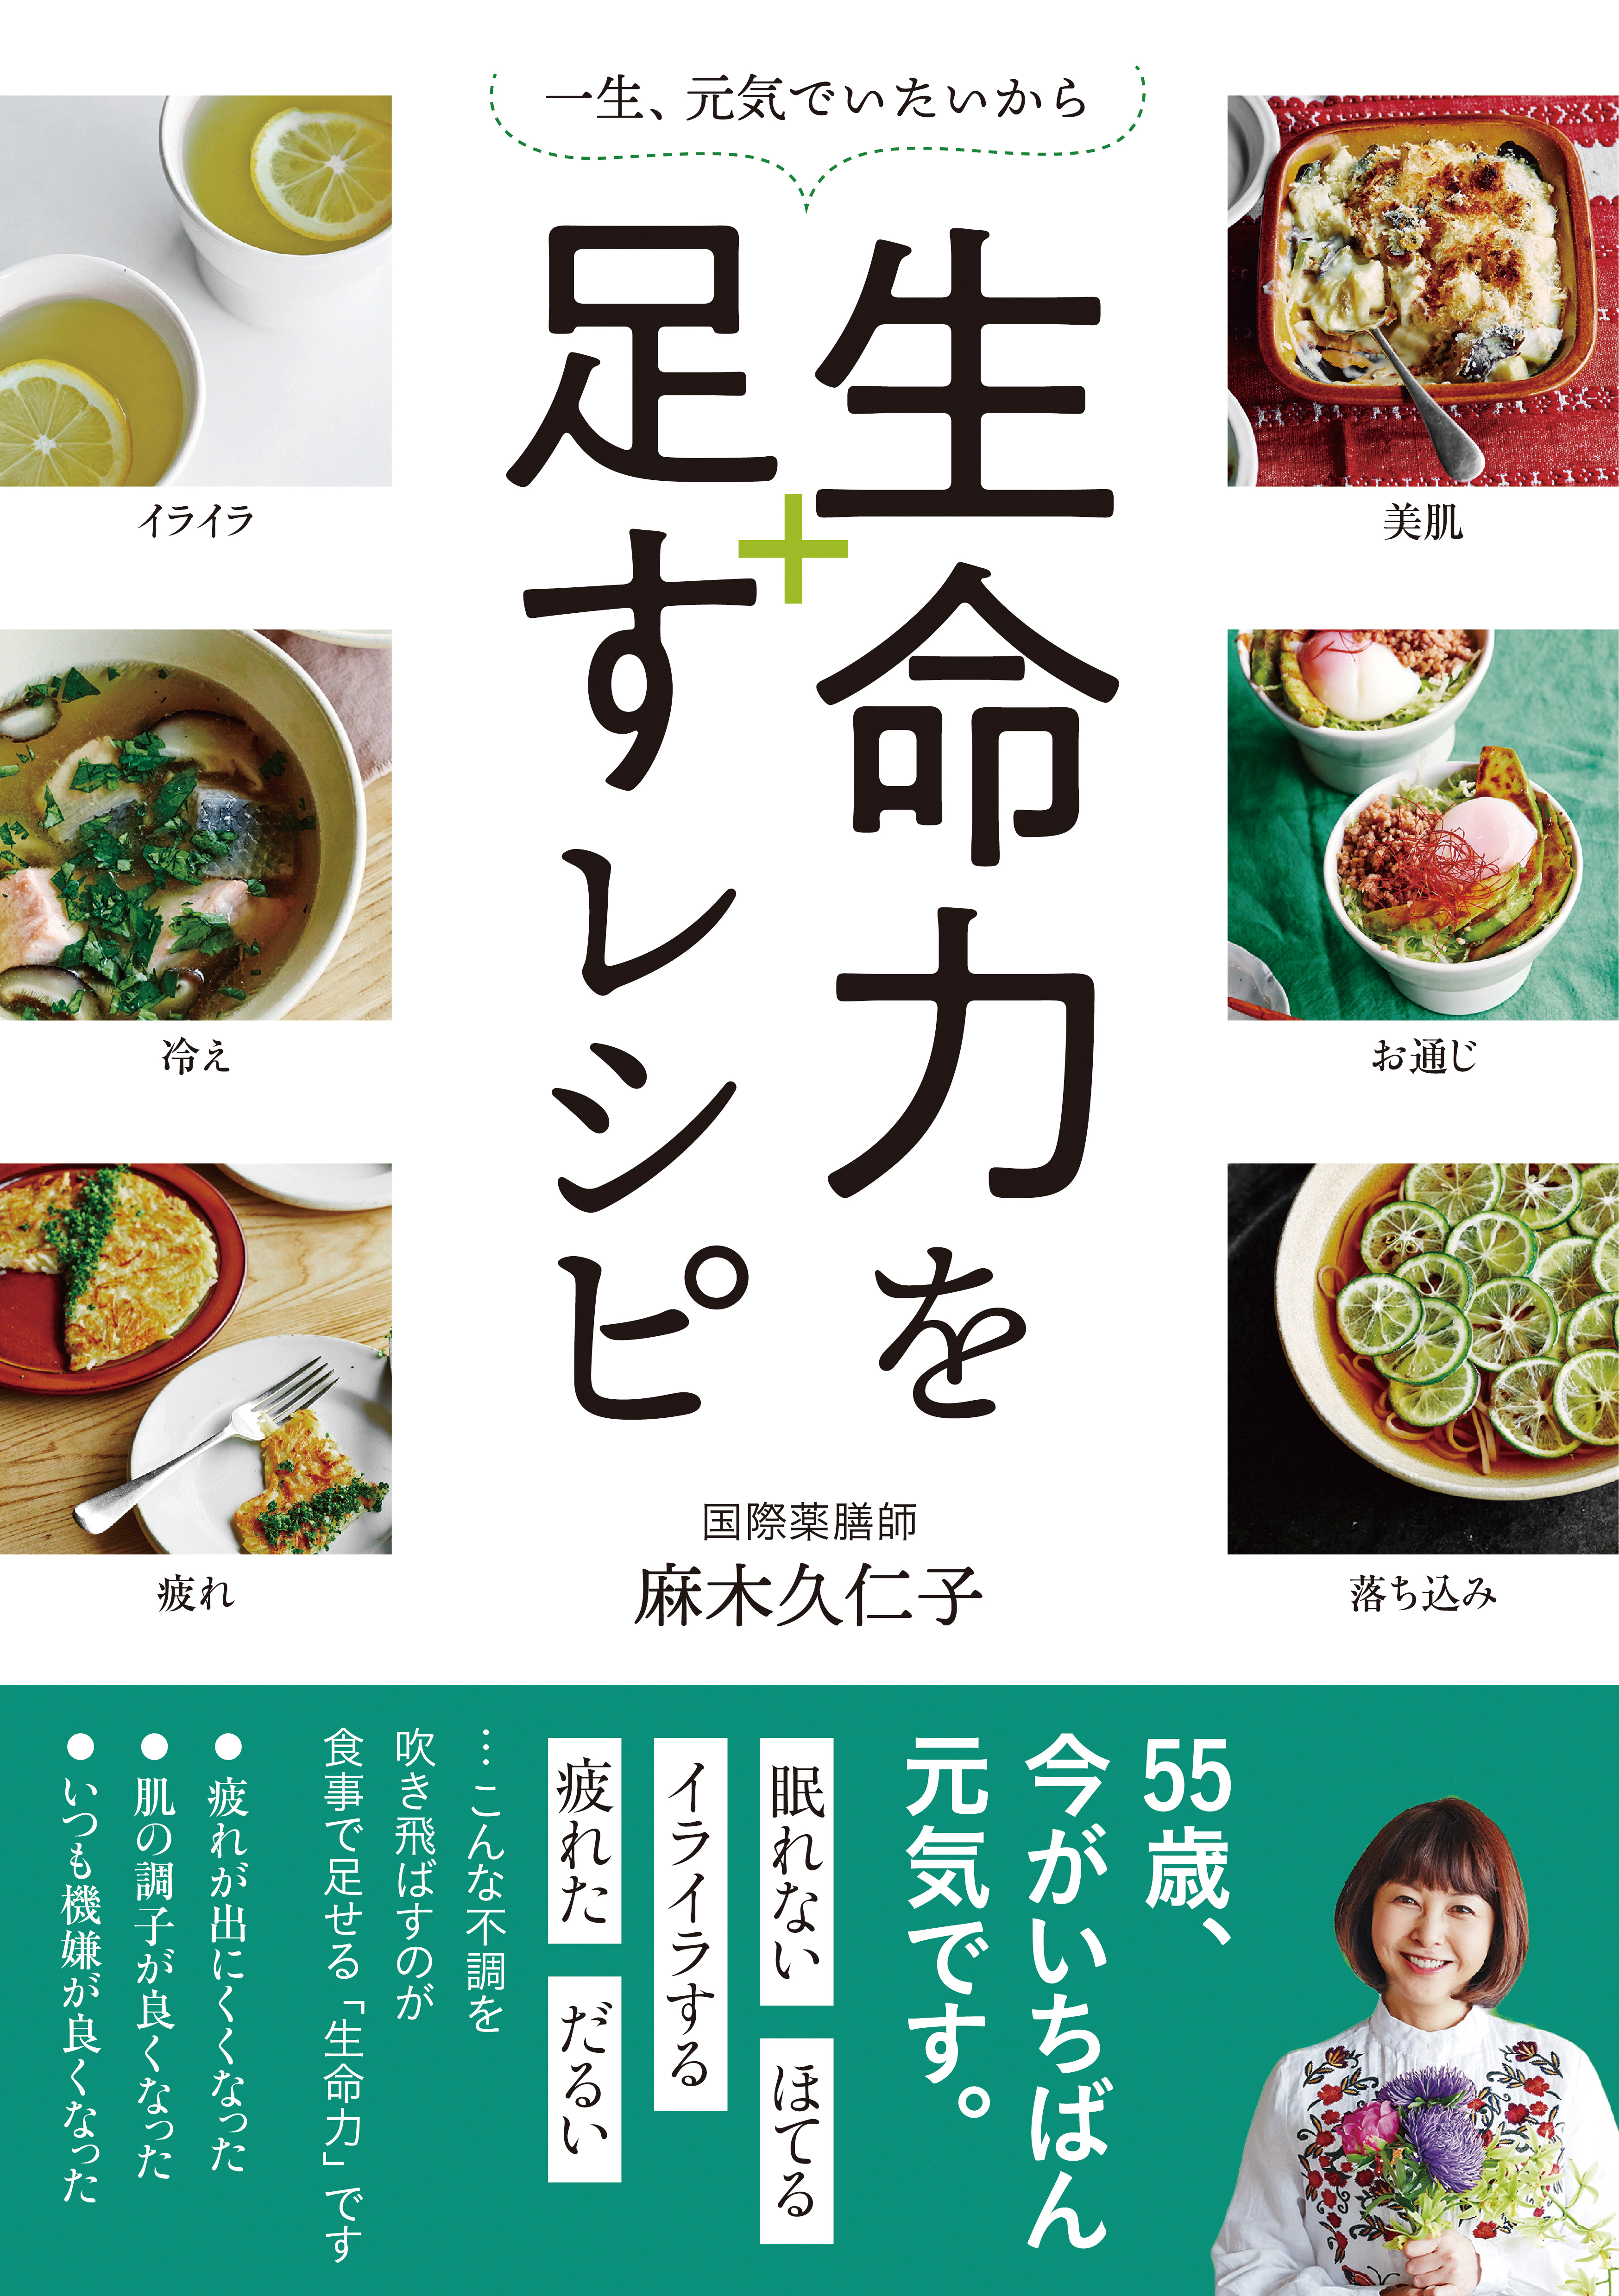 麻木久仁子さんの薬膳「お膳に5色を入れれば、自然とバランスのいい食事に」 127-H1-reimeiryoku.jpg